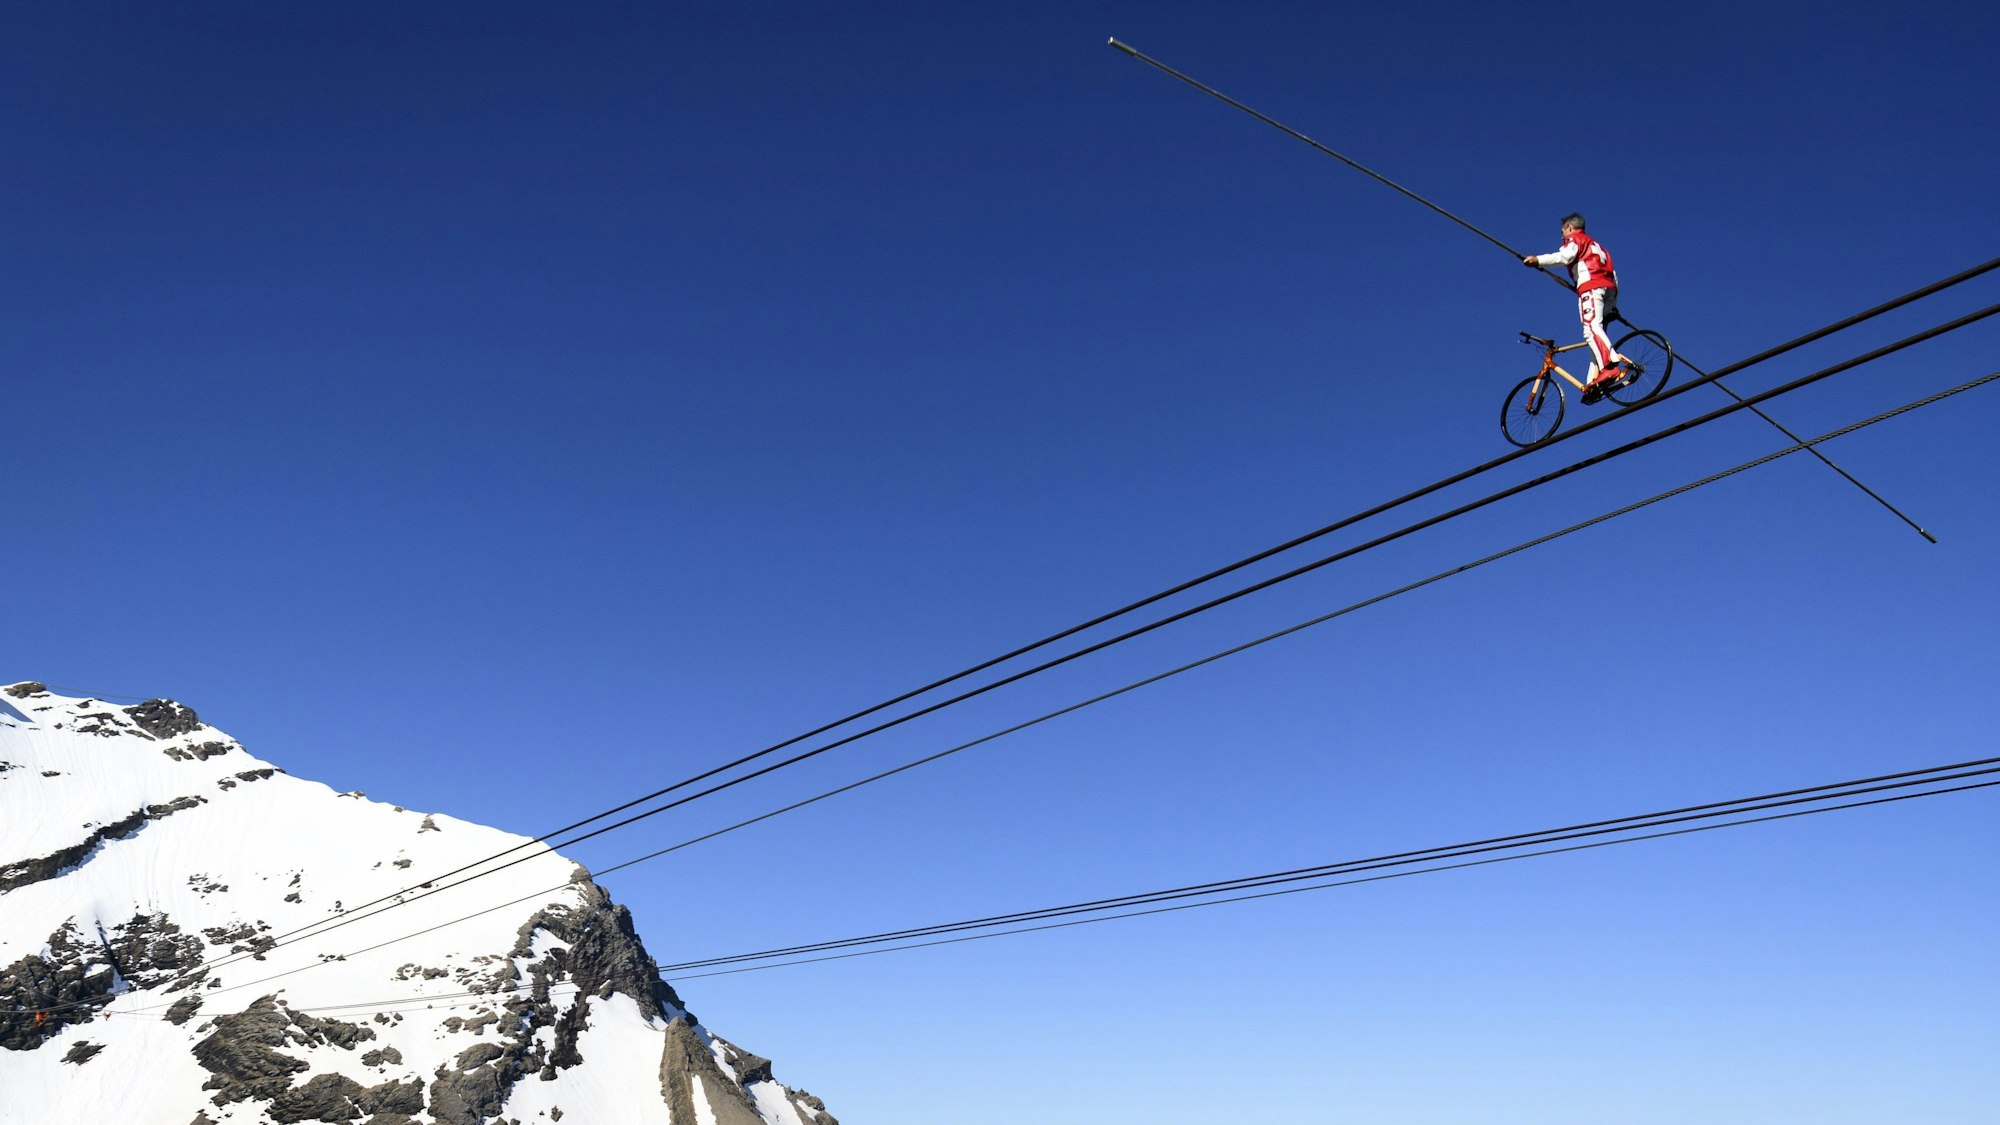 Der Schweizer Drahtseilkünstler Freddy Nock fährt mit einem Fahrrad auf einem Seil einer Sei.